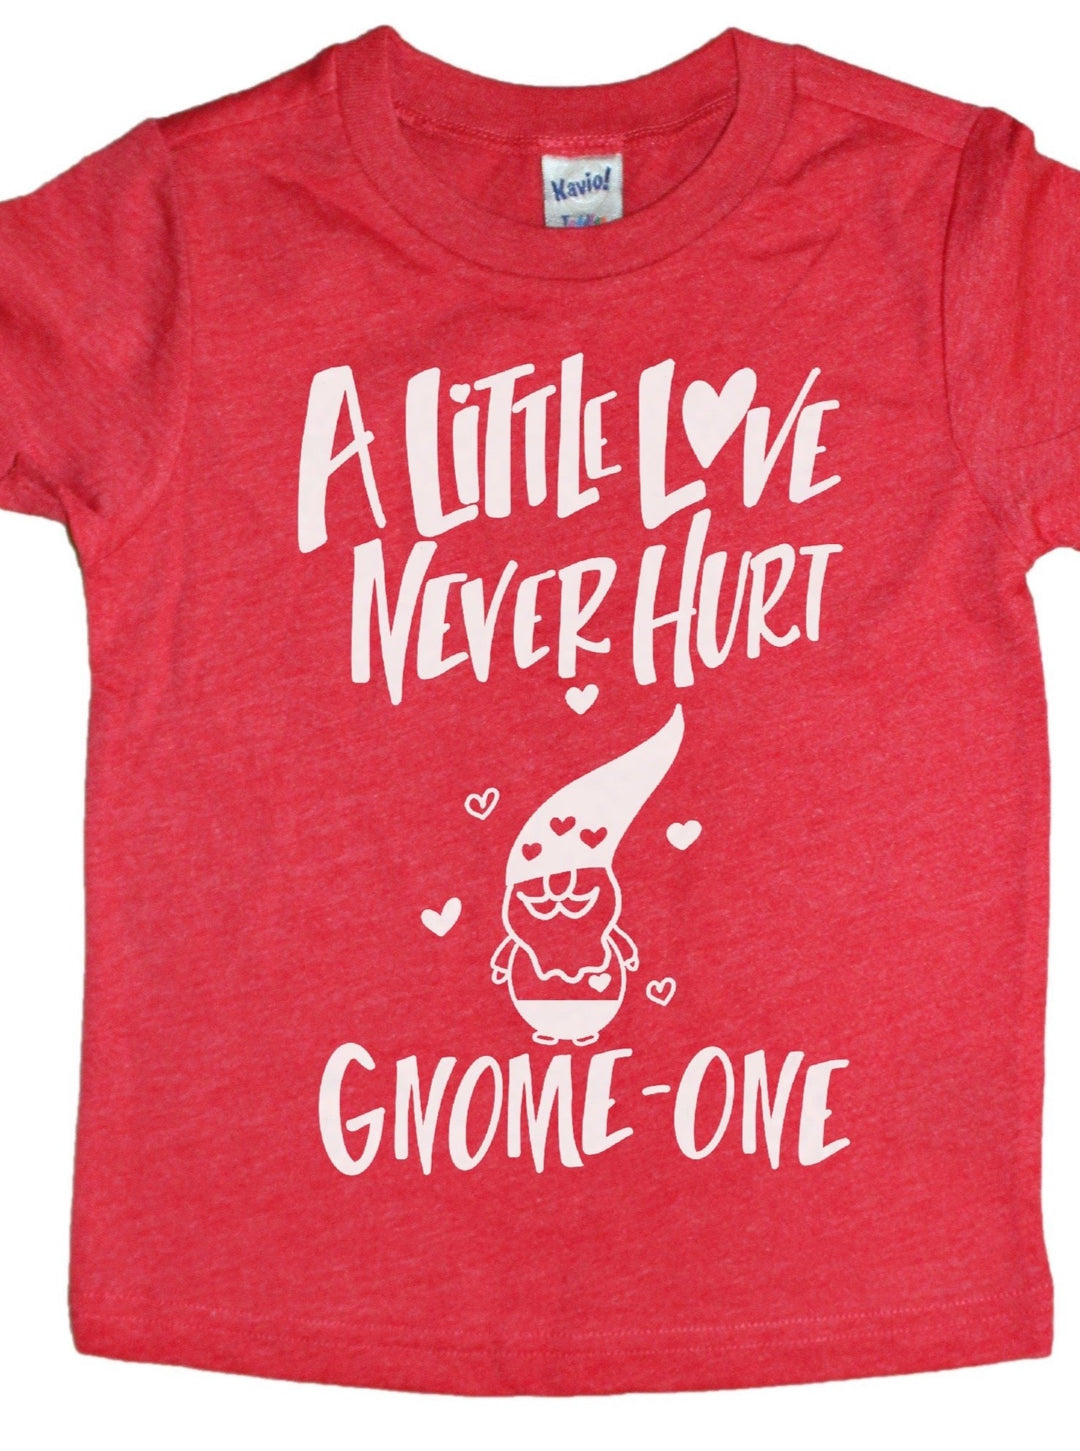 Gnome-One Kids Tee